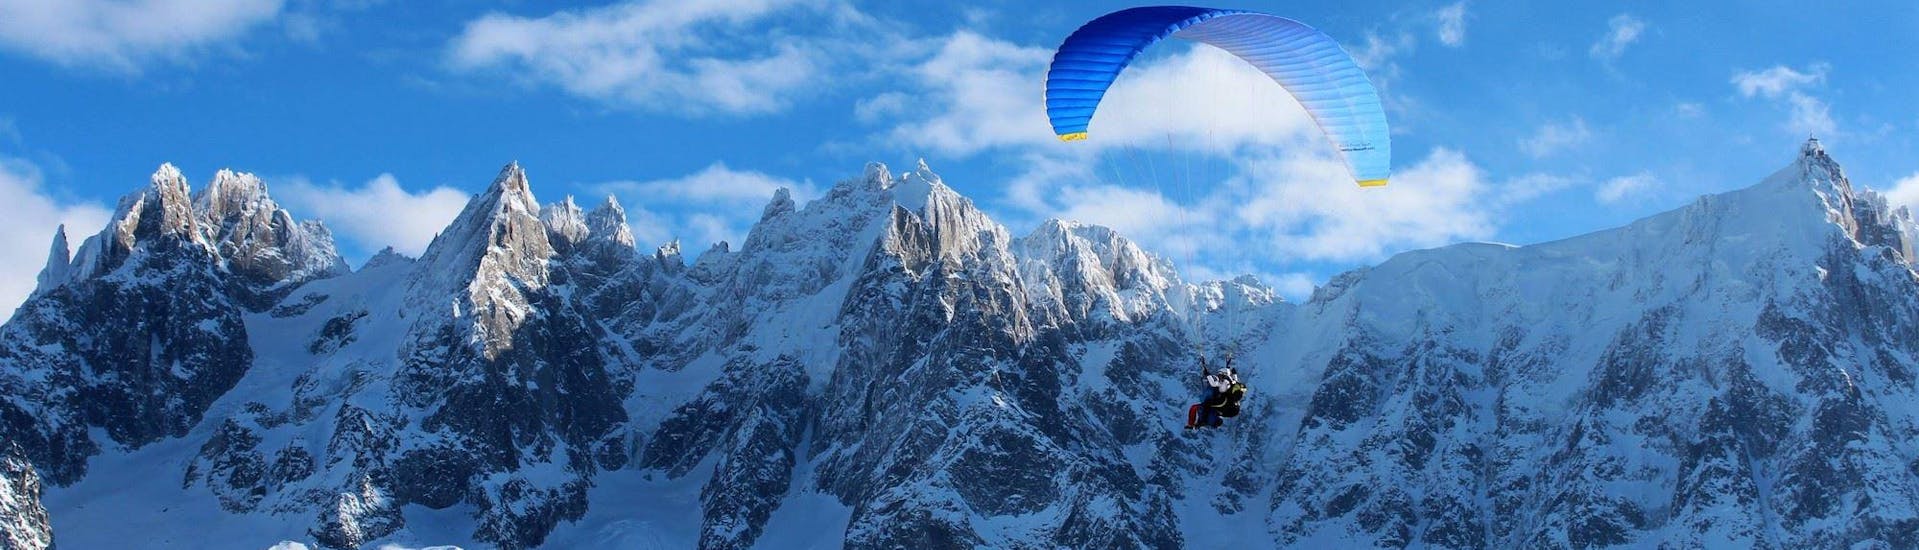 Volo acrobatico in parapendio biposto a Chamonix (da 13 anni) - Plan de l'Aiguille.